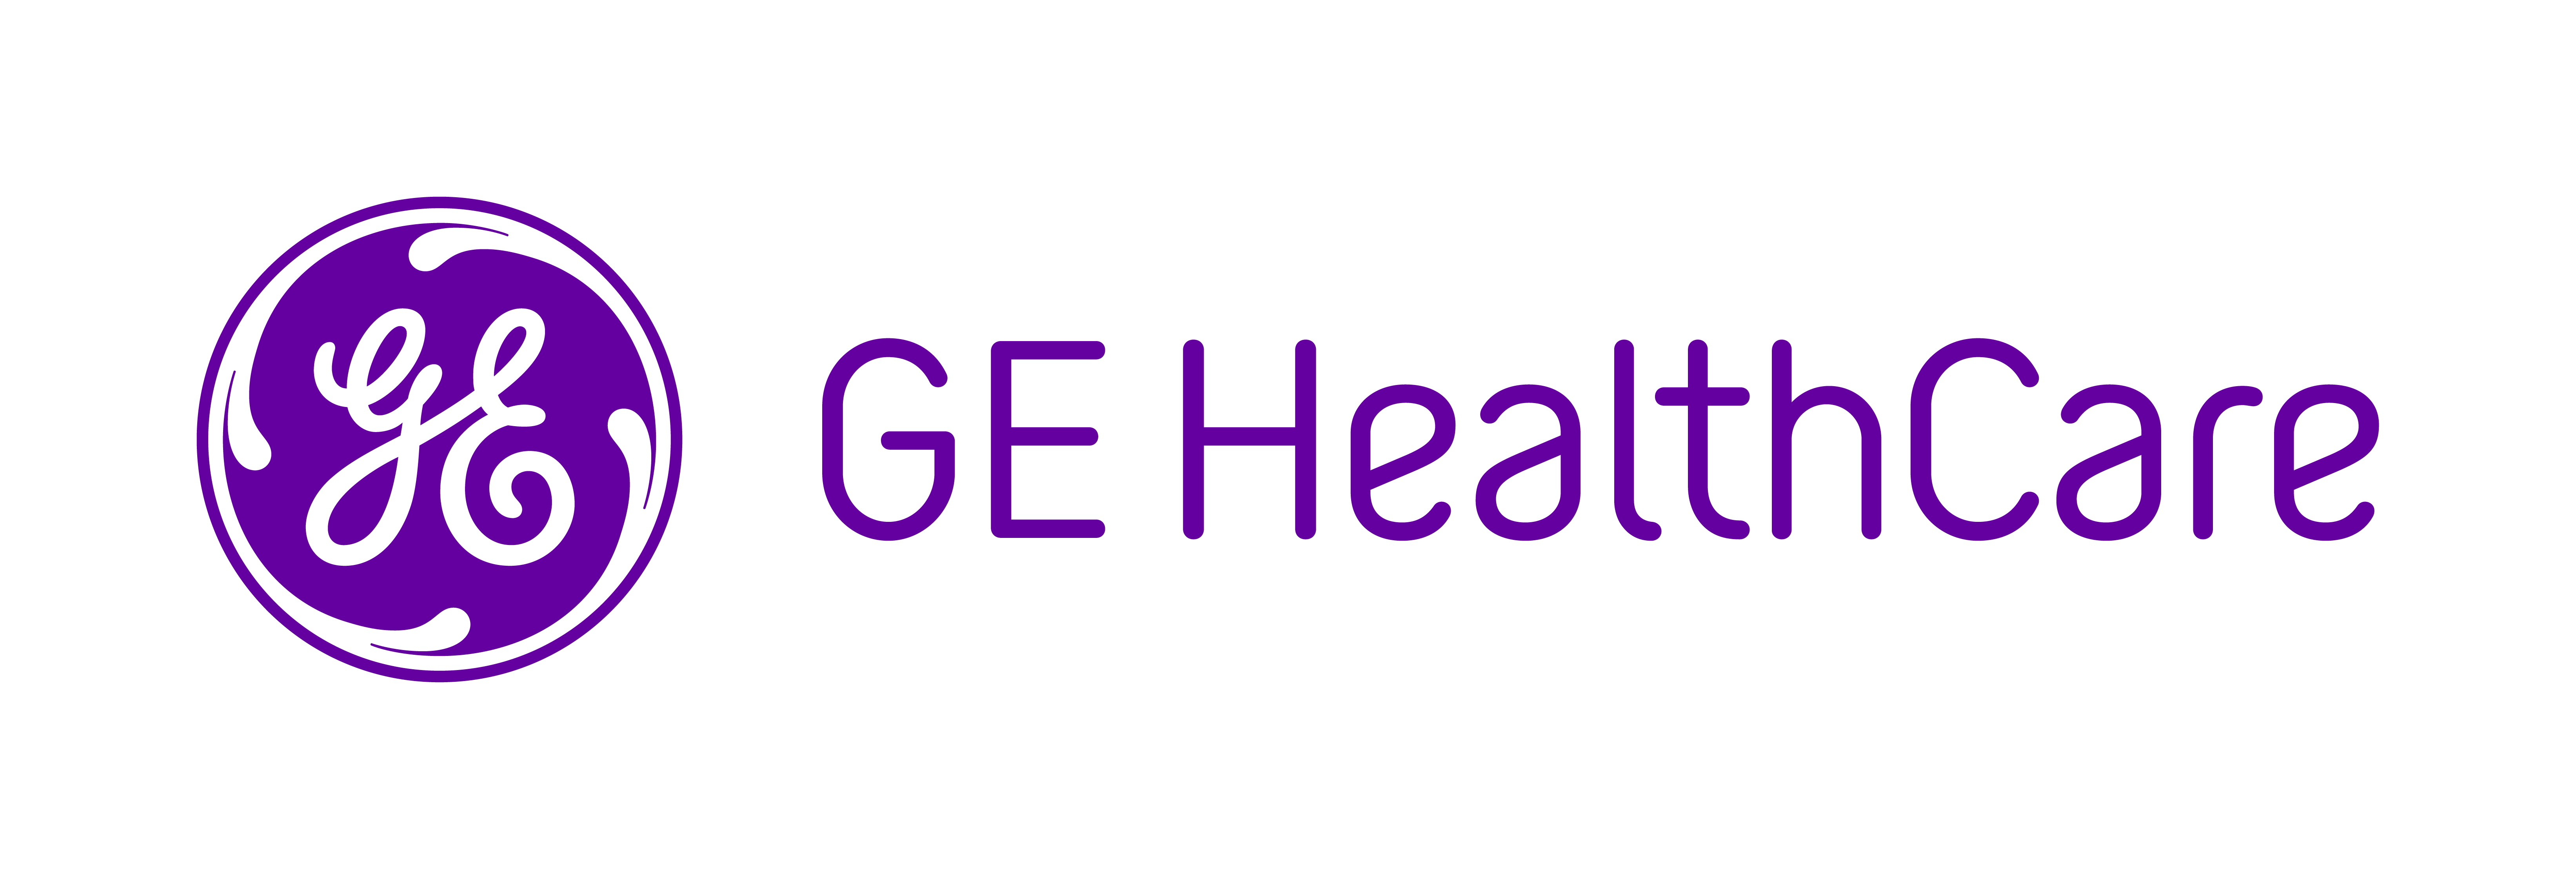 Digital Expert by GE Healthcare